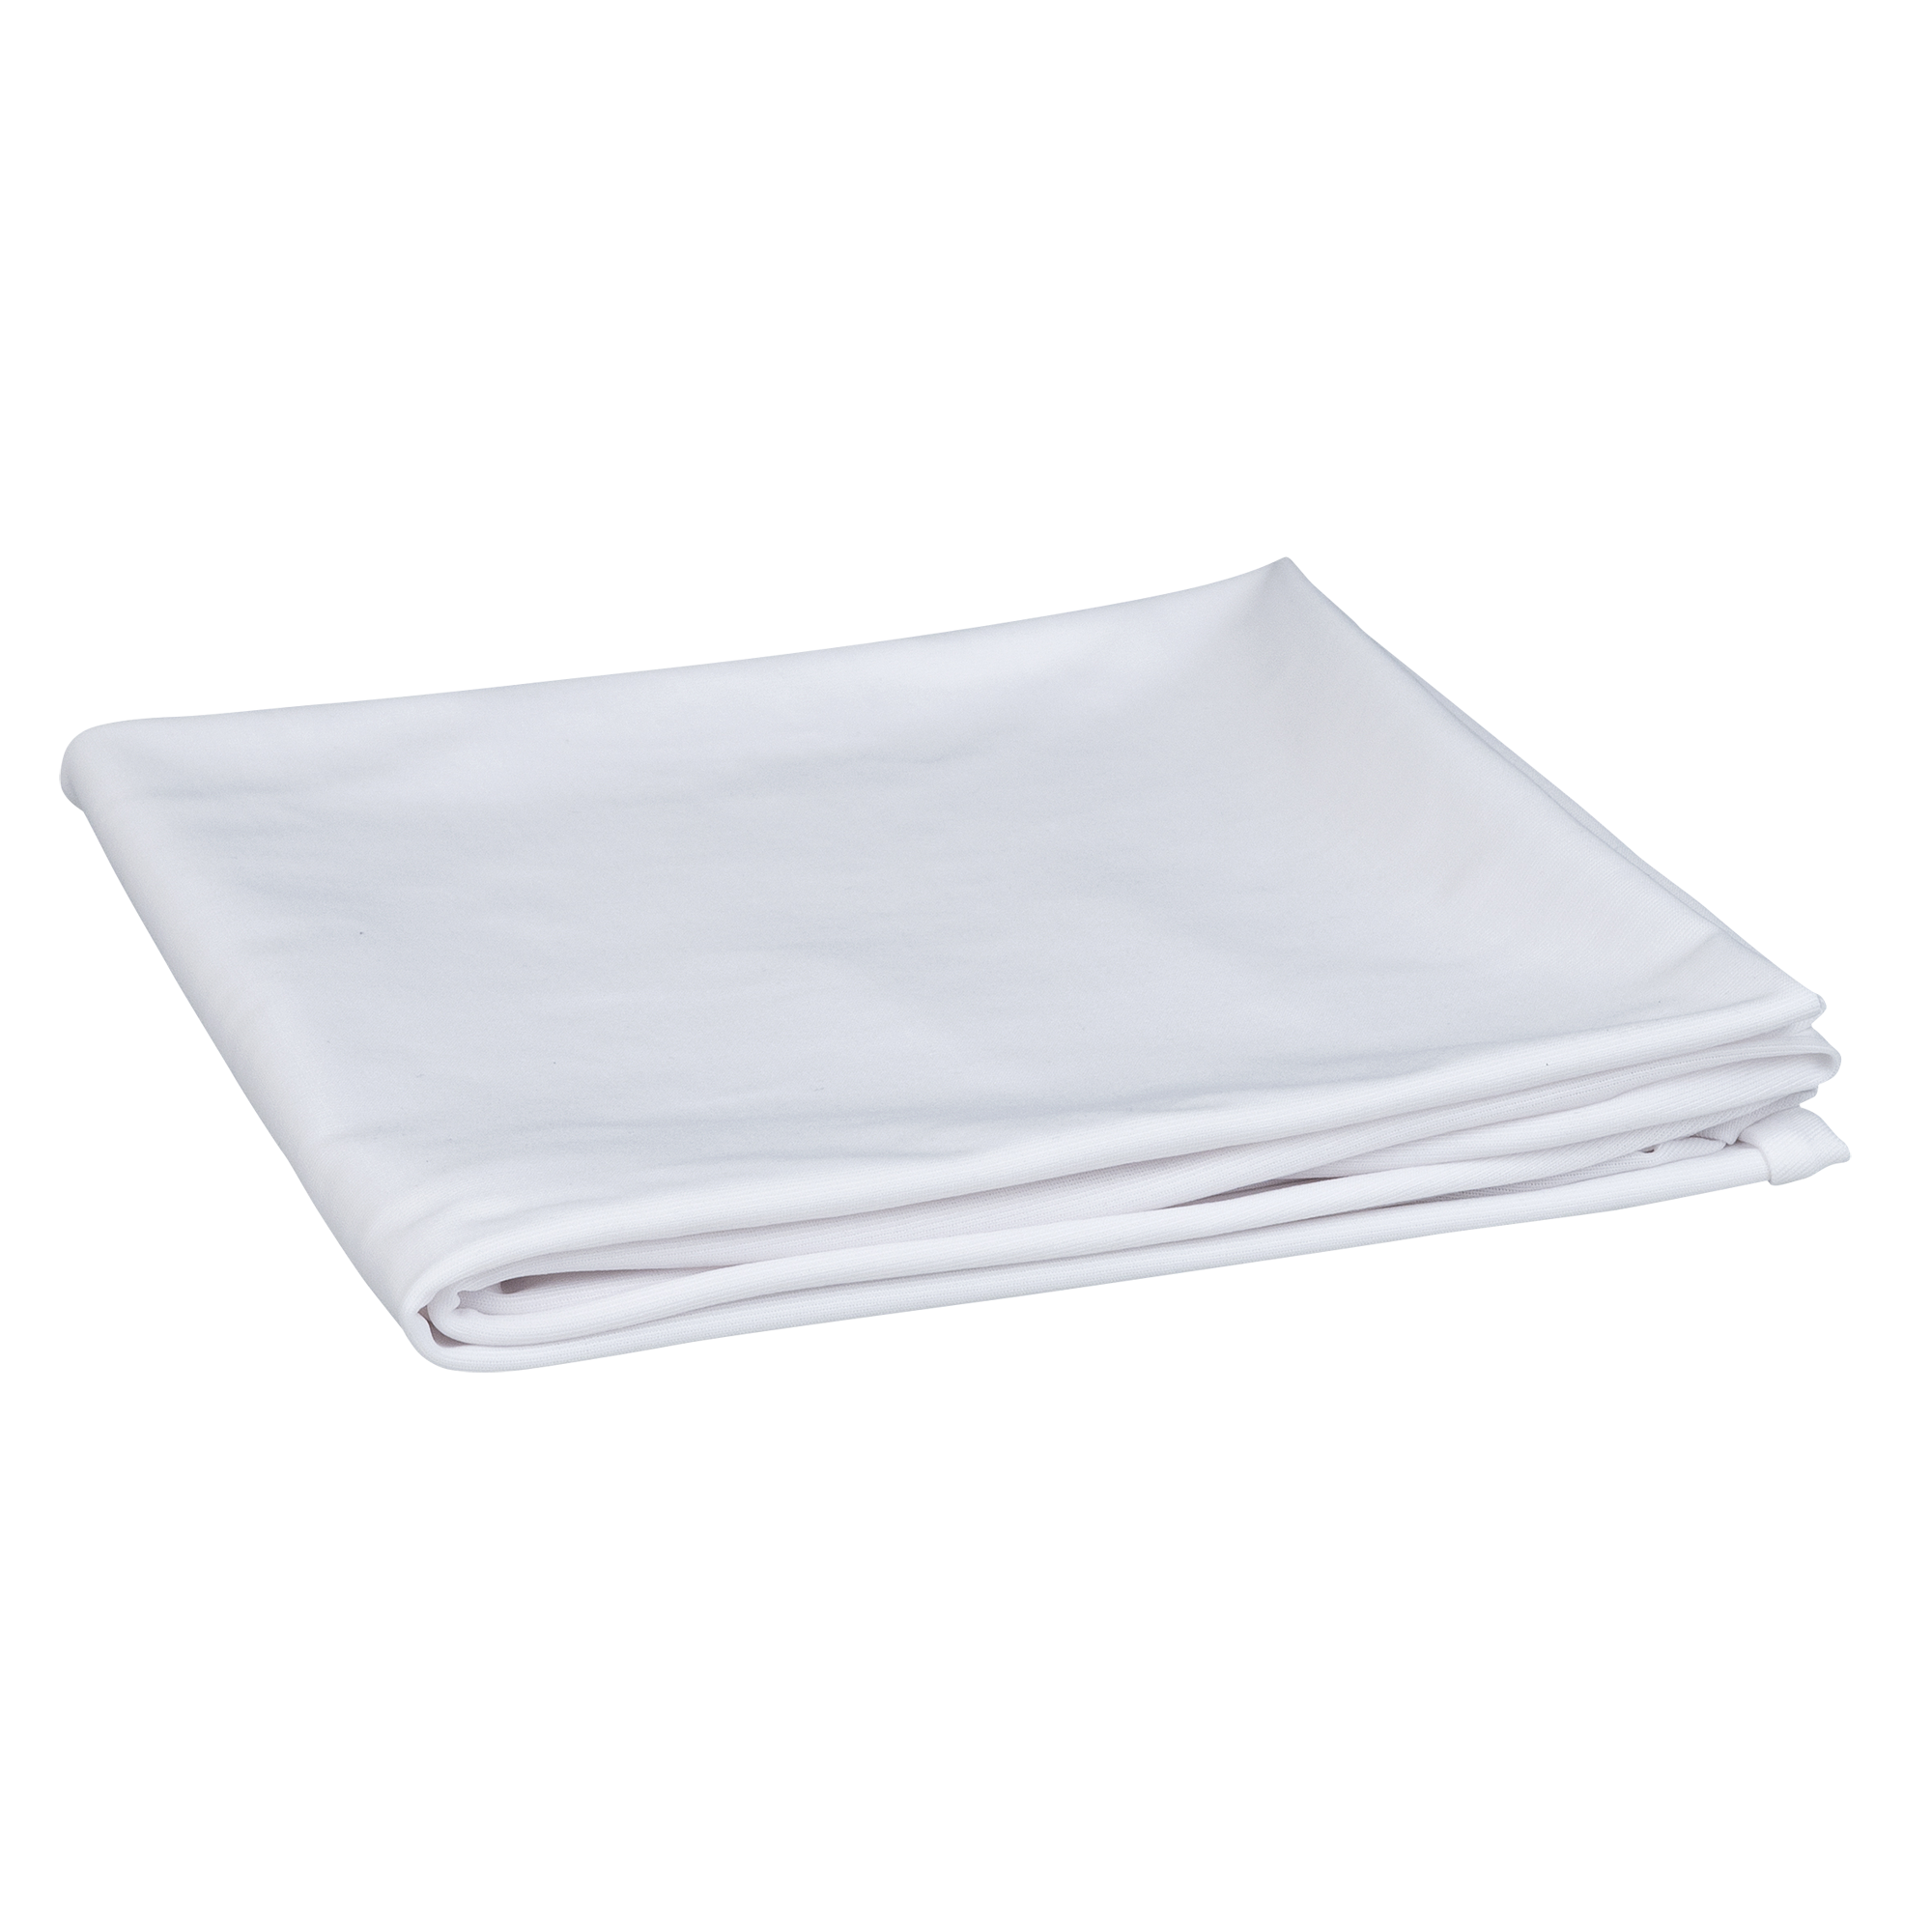 Showgear Truss Stretch Cover, white 100 cm